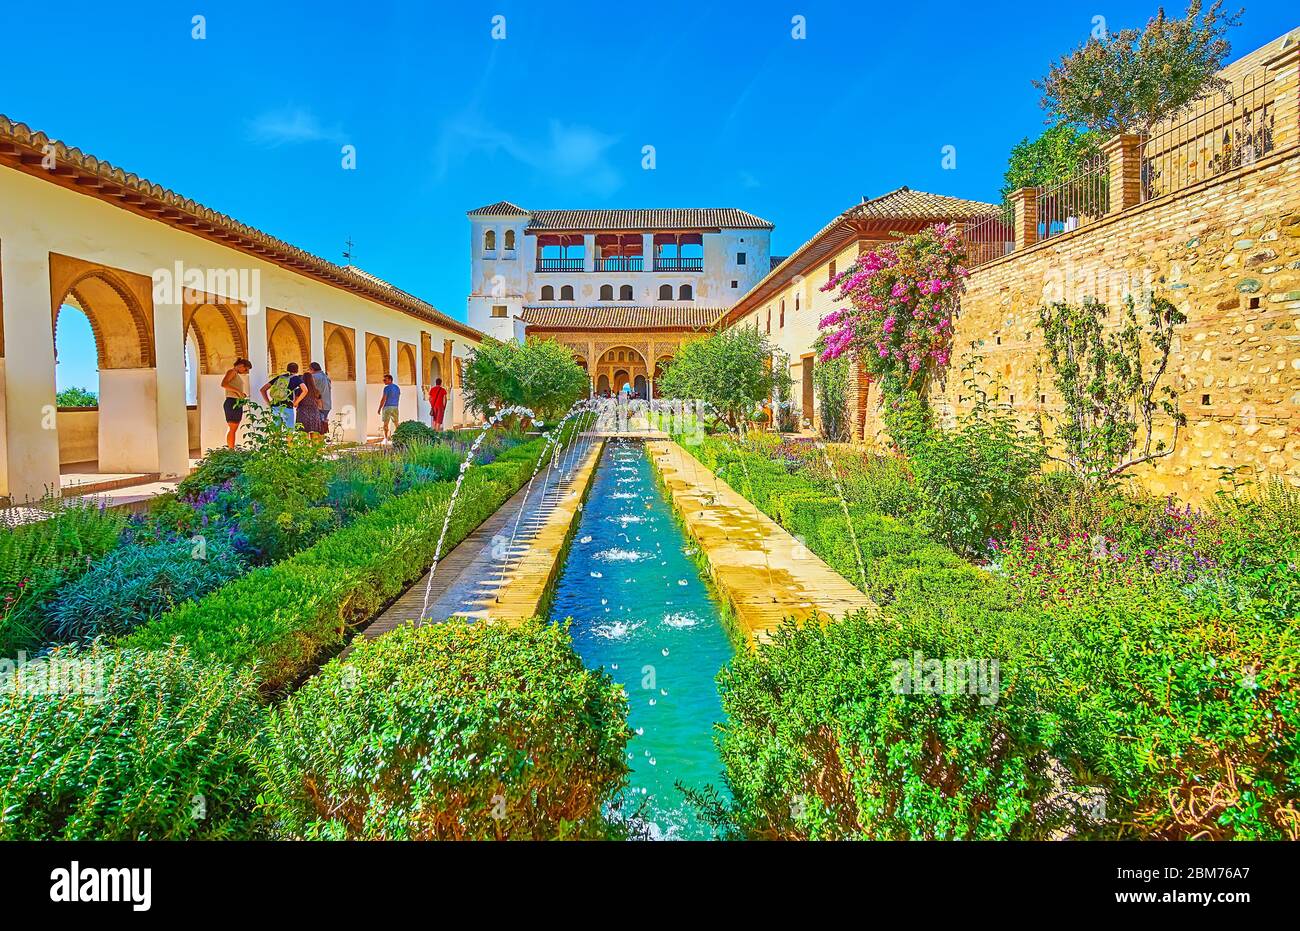 GRENADE, ESPAGNE - 25 SEPTEMBRE 2019 : le patio de l'irrigation de la Sorcière du Generalife (Alhambra) avec des plantes topiaires, fleurs en fleurs, fontaines et vieux moi Banque D'Images